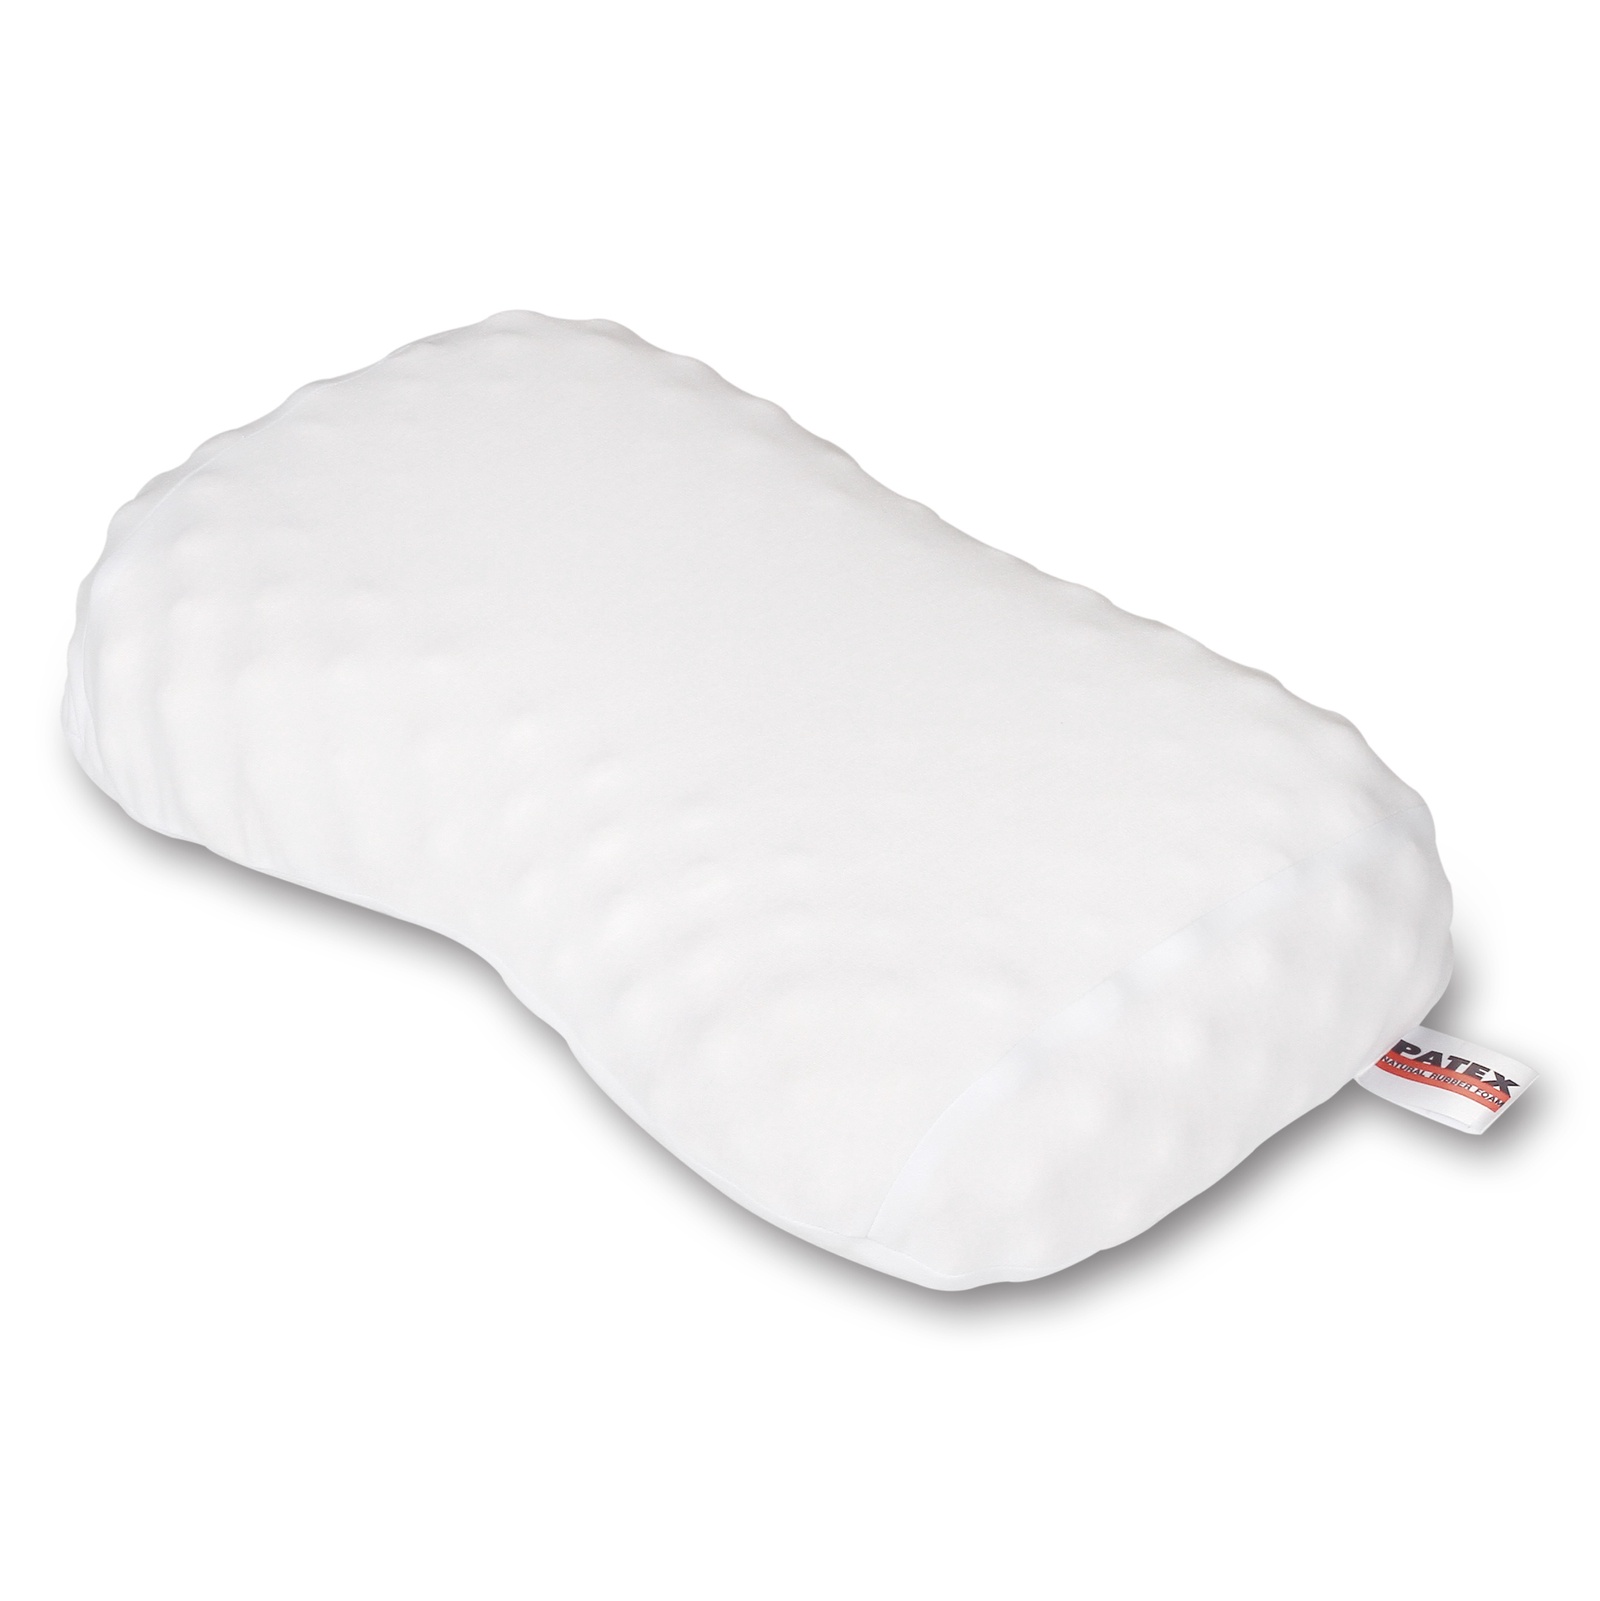 Купить подушку из тайланда. Ортопедическая подушка Memory Pillow latex. Ортопедическая латексная подушка Patex. Латексная подушка Тайланд. Ортопедические подушки из натурального латекса.